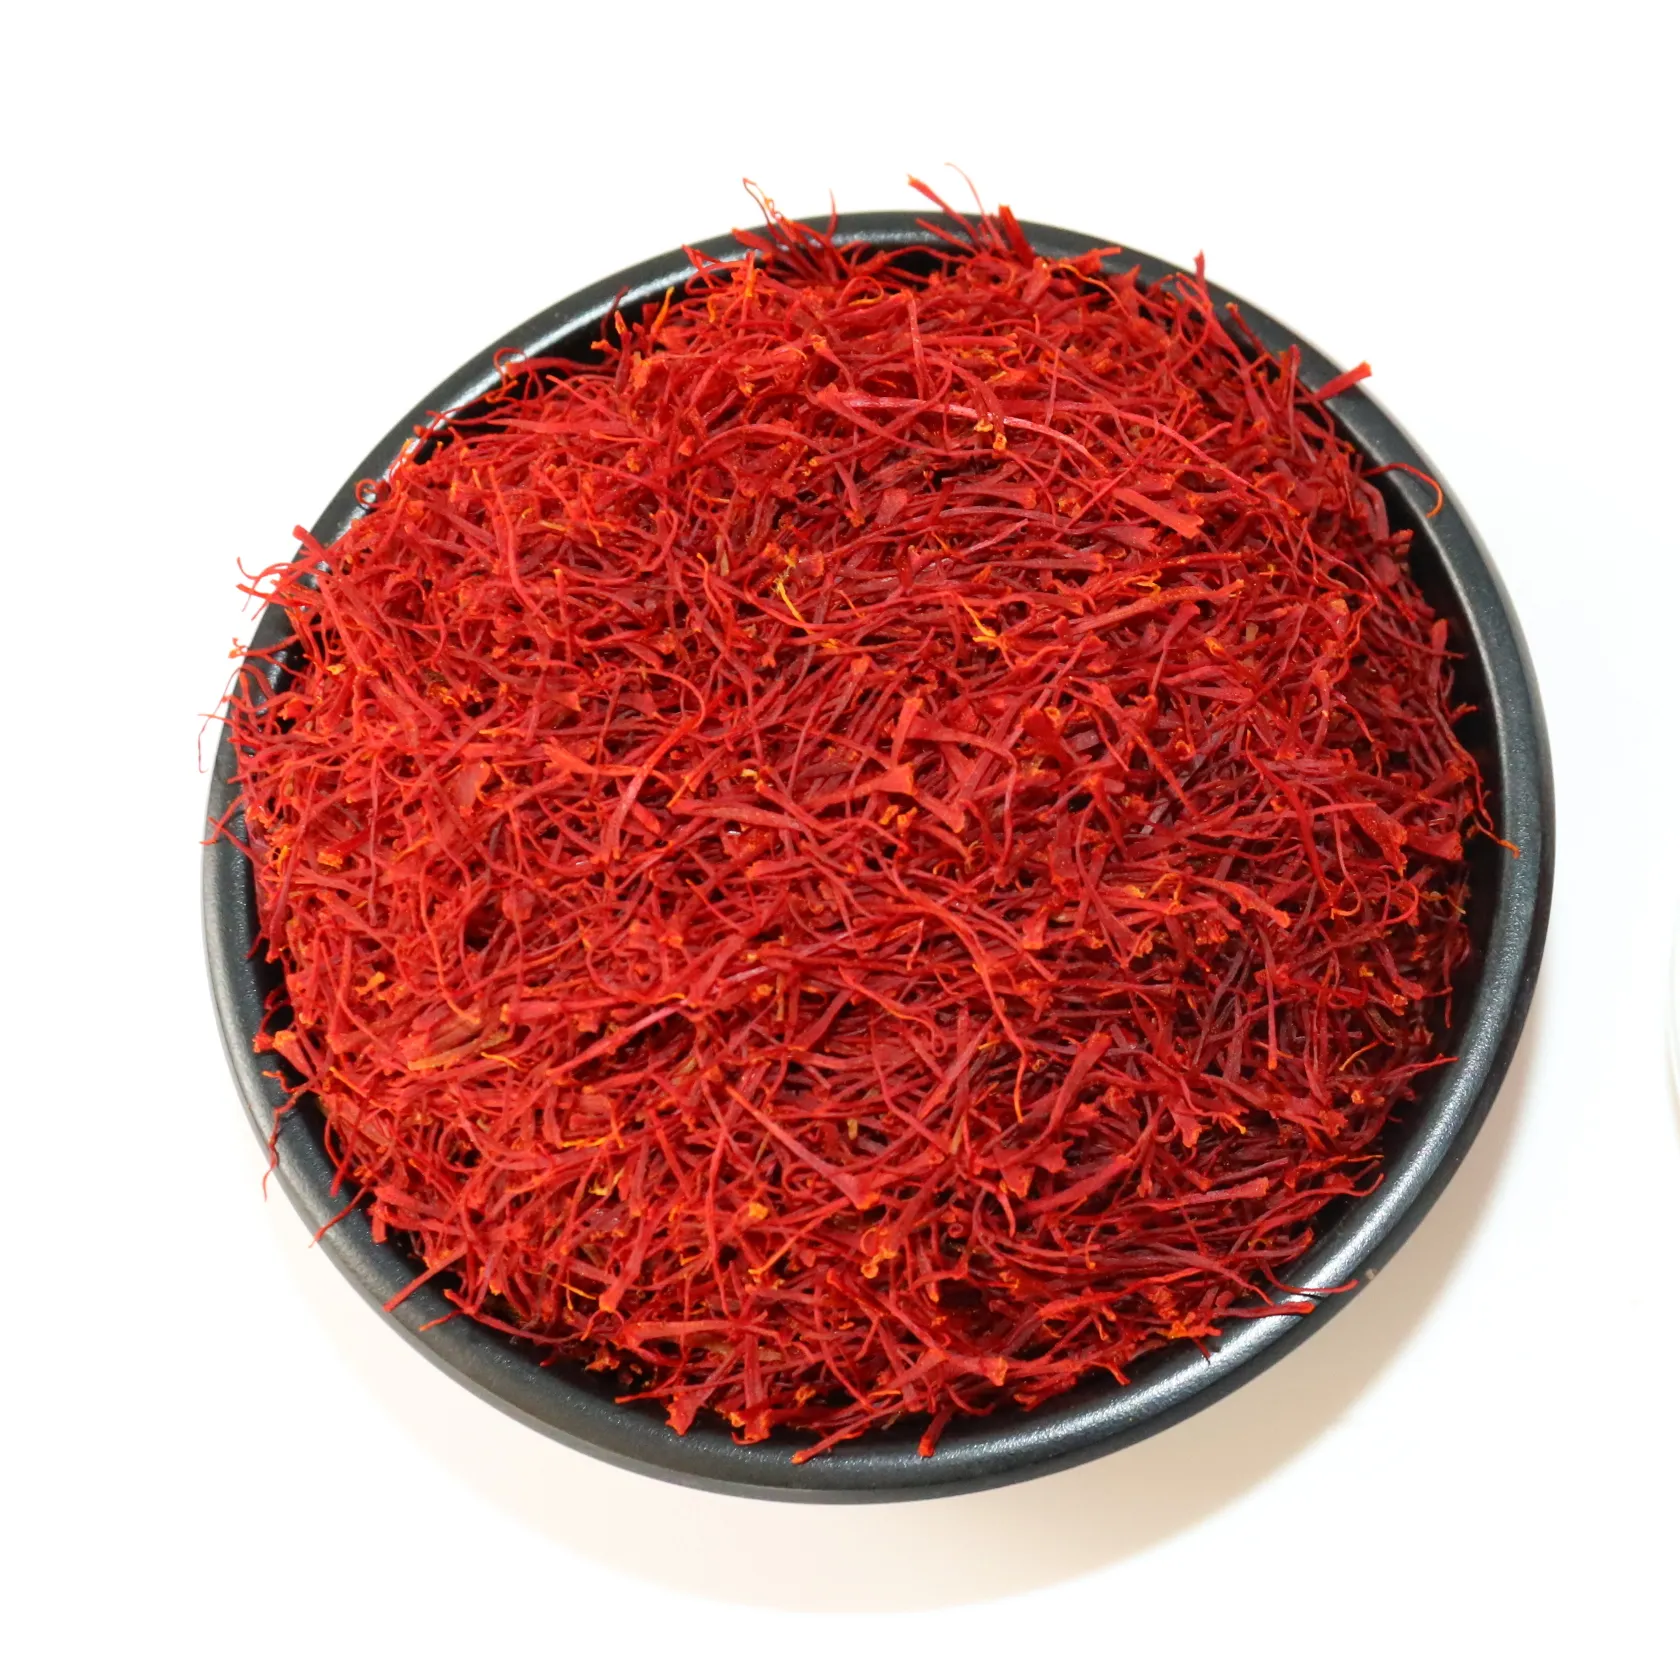 Saffron seca original do fornecedor do saffron do saffron da qaenat na china